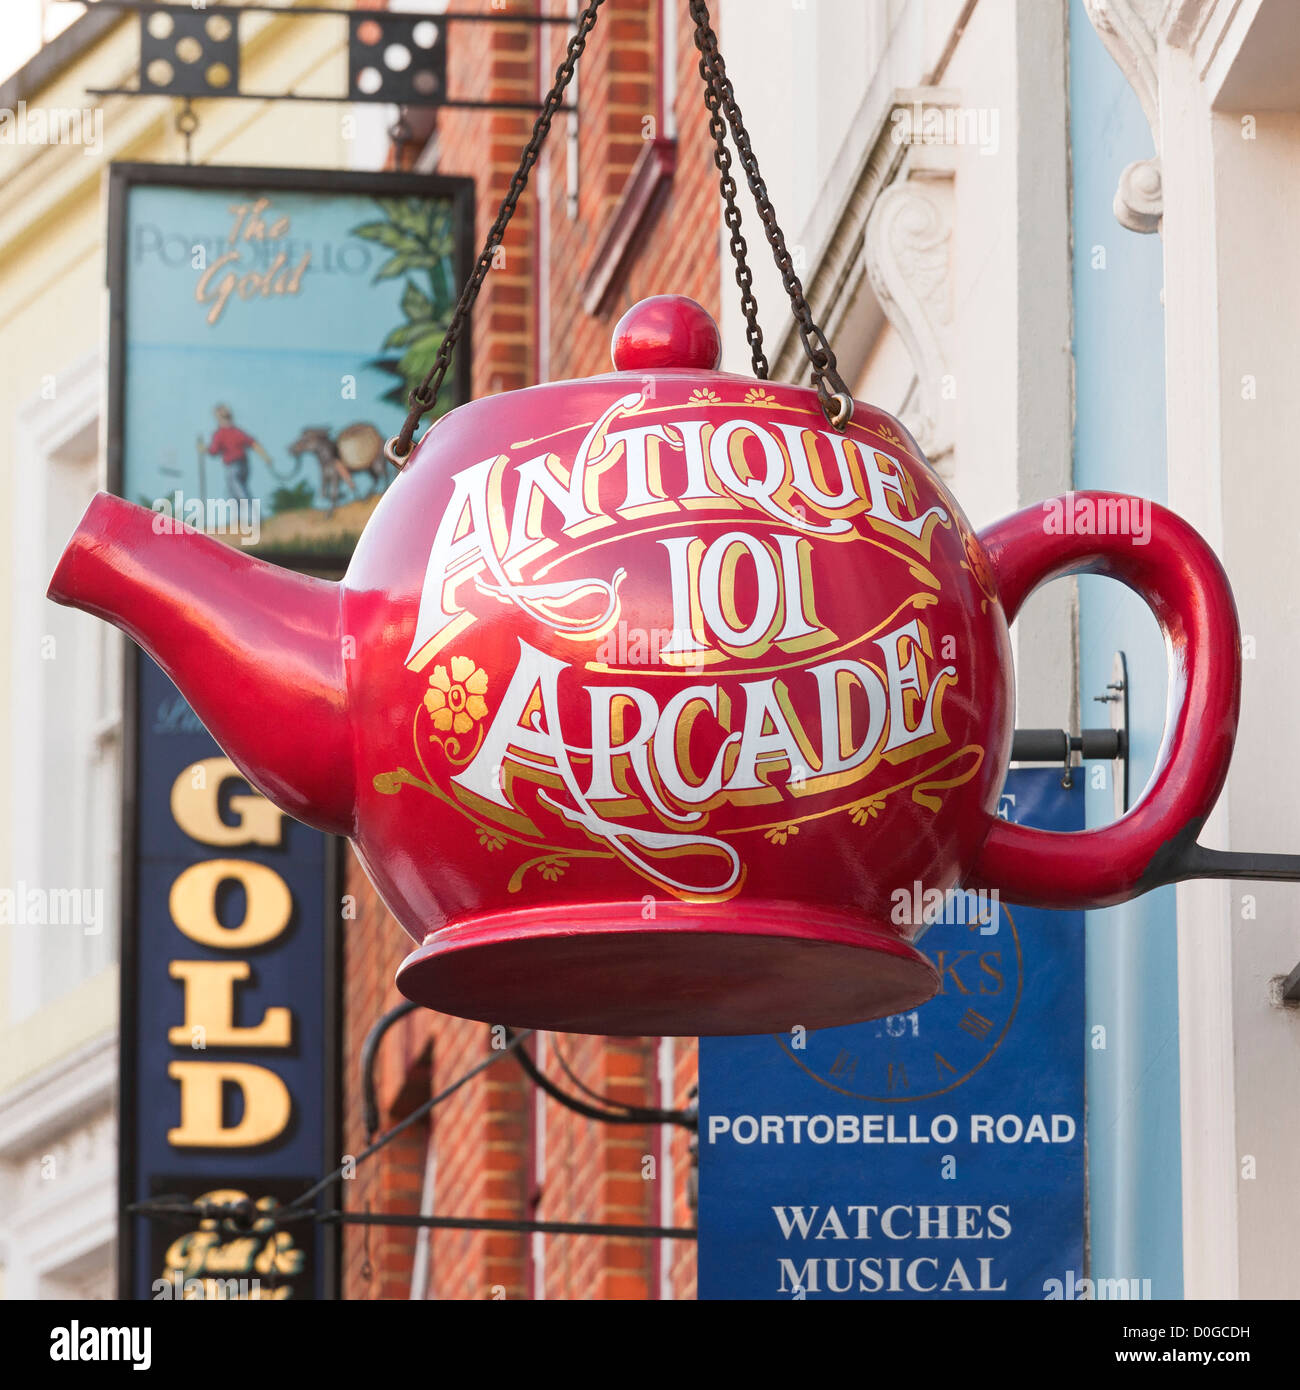 Londra, Portobello Road a Notting Hill. Big Red teapot shop segno per oggetti di antiquariato mall antichi 101 Arcade il Portobello Rd. Foto Stock